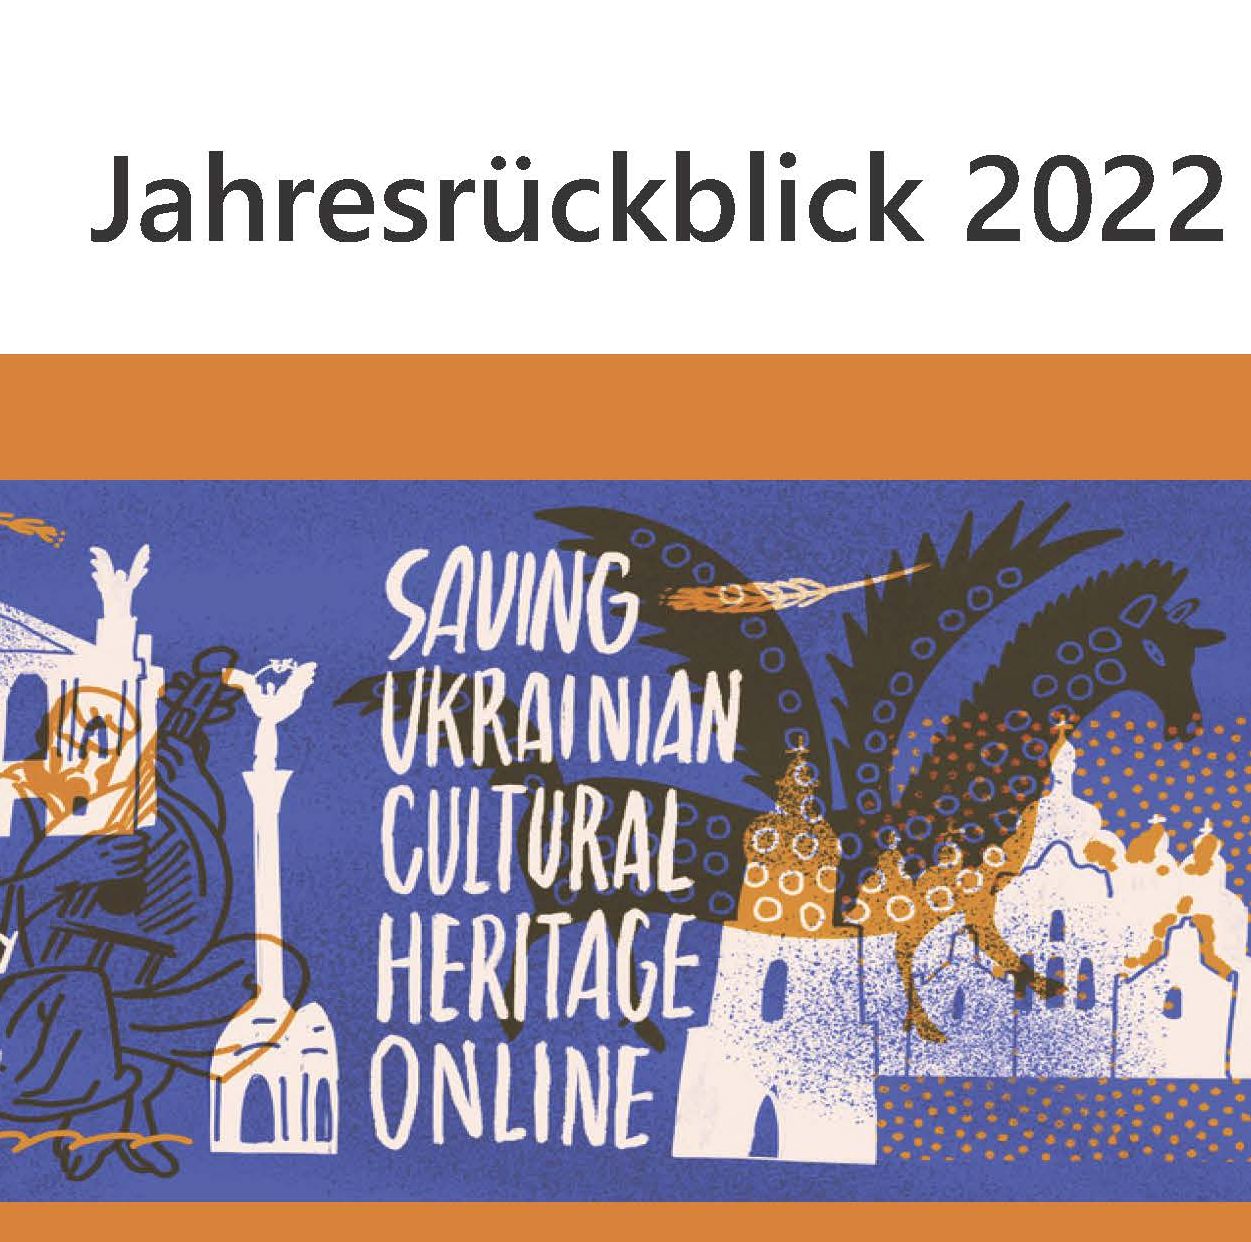 Jahresrückblick der SOB 2022, Titelblattvorschau - ein Motivplakat zur Rettung ukrainischer Kulturdenkmäler